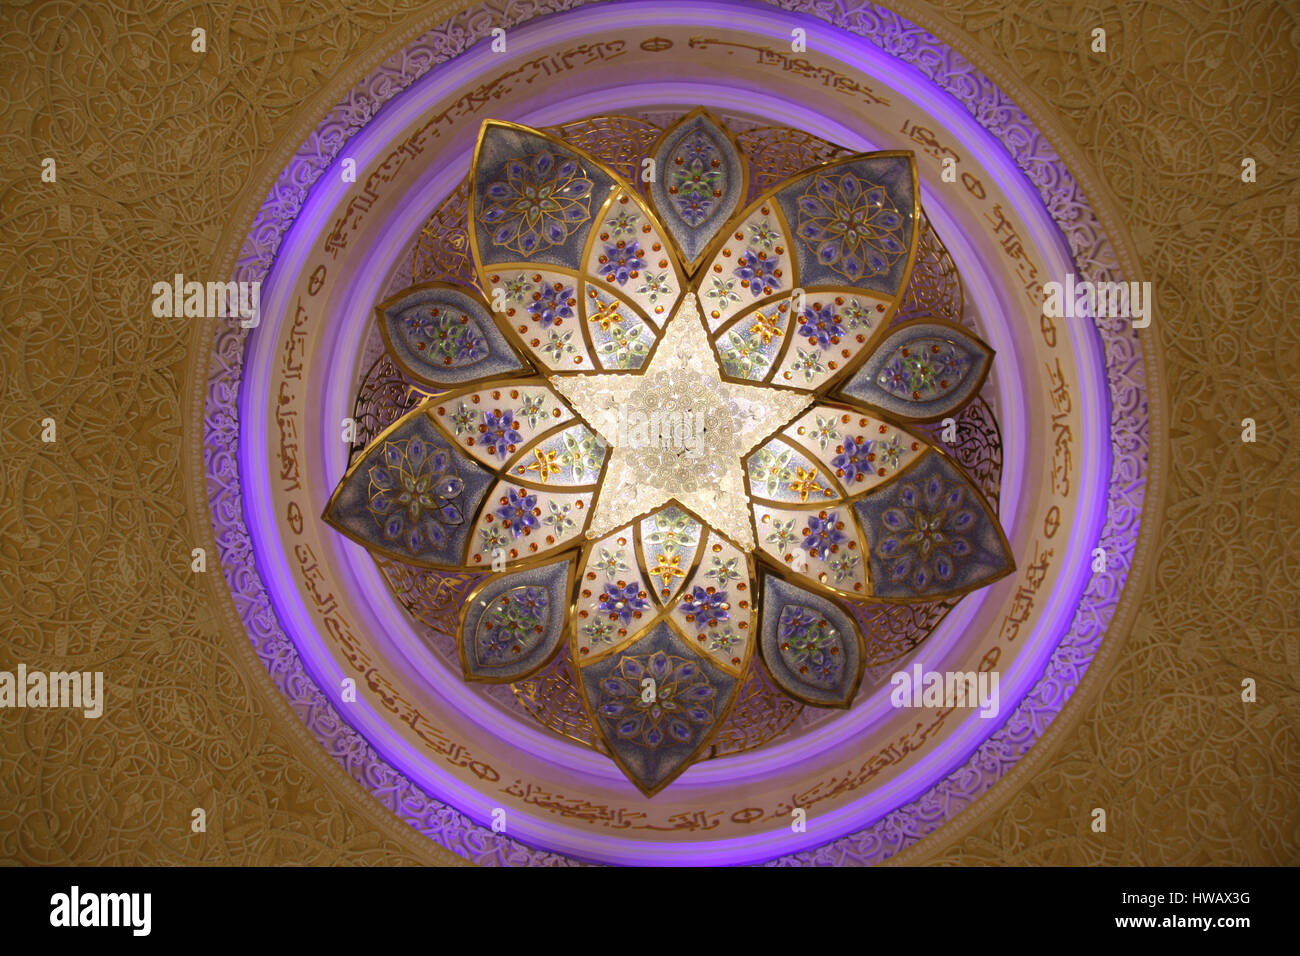 Eine schöne Kronleuchter mit arabischen Design an der Decke der großen Moschee in Abu Dhabi. Stockfoto